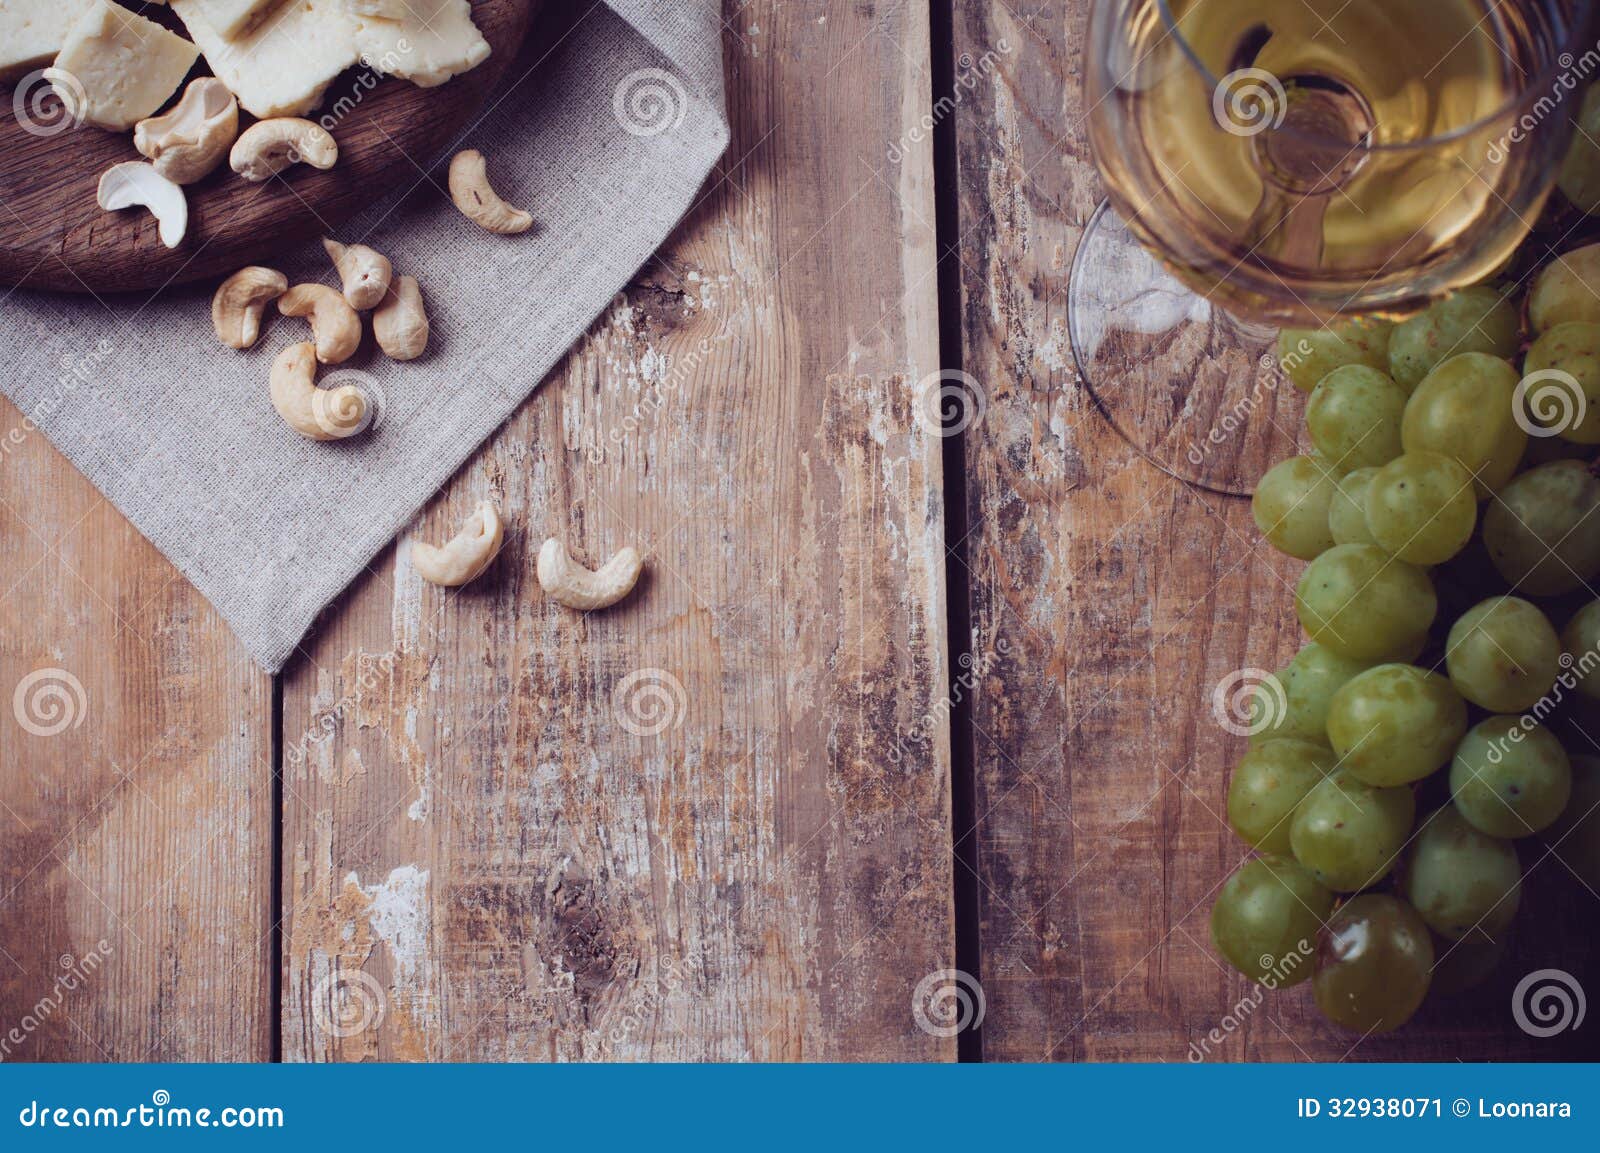 Un verre de vin blanc, de raisins, de noix de cajou et de fromage à pâte molle sur un conseil en bois, fond rustique de style